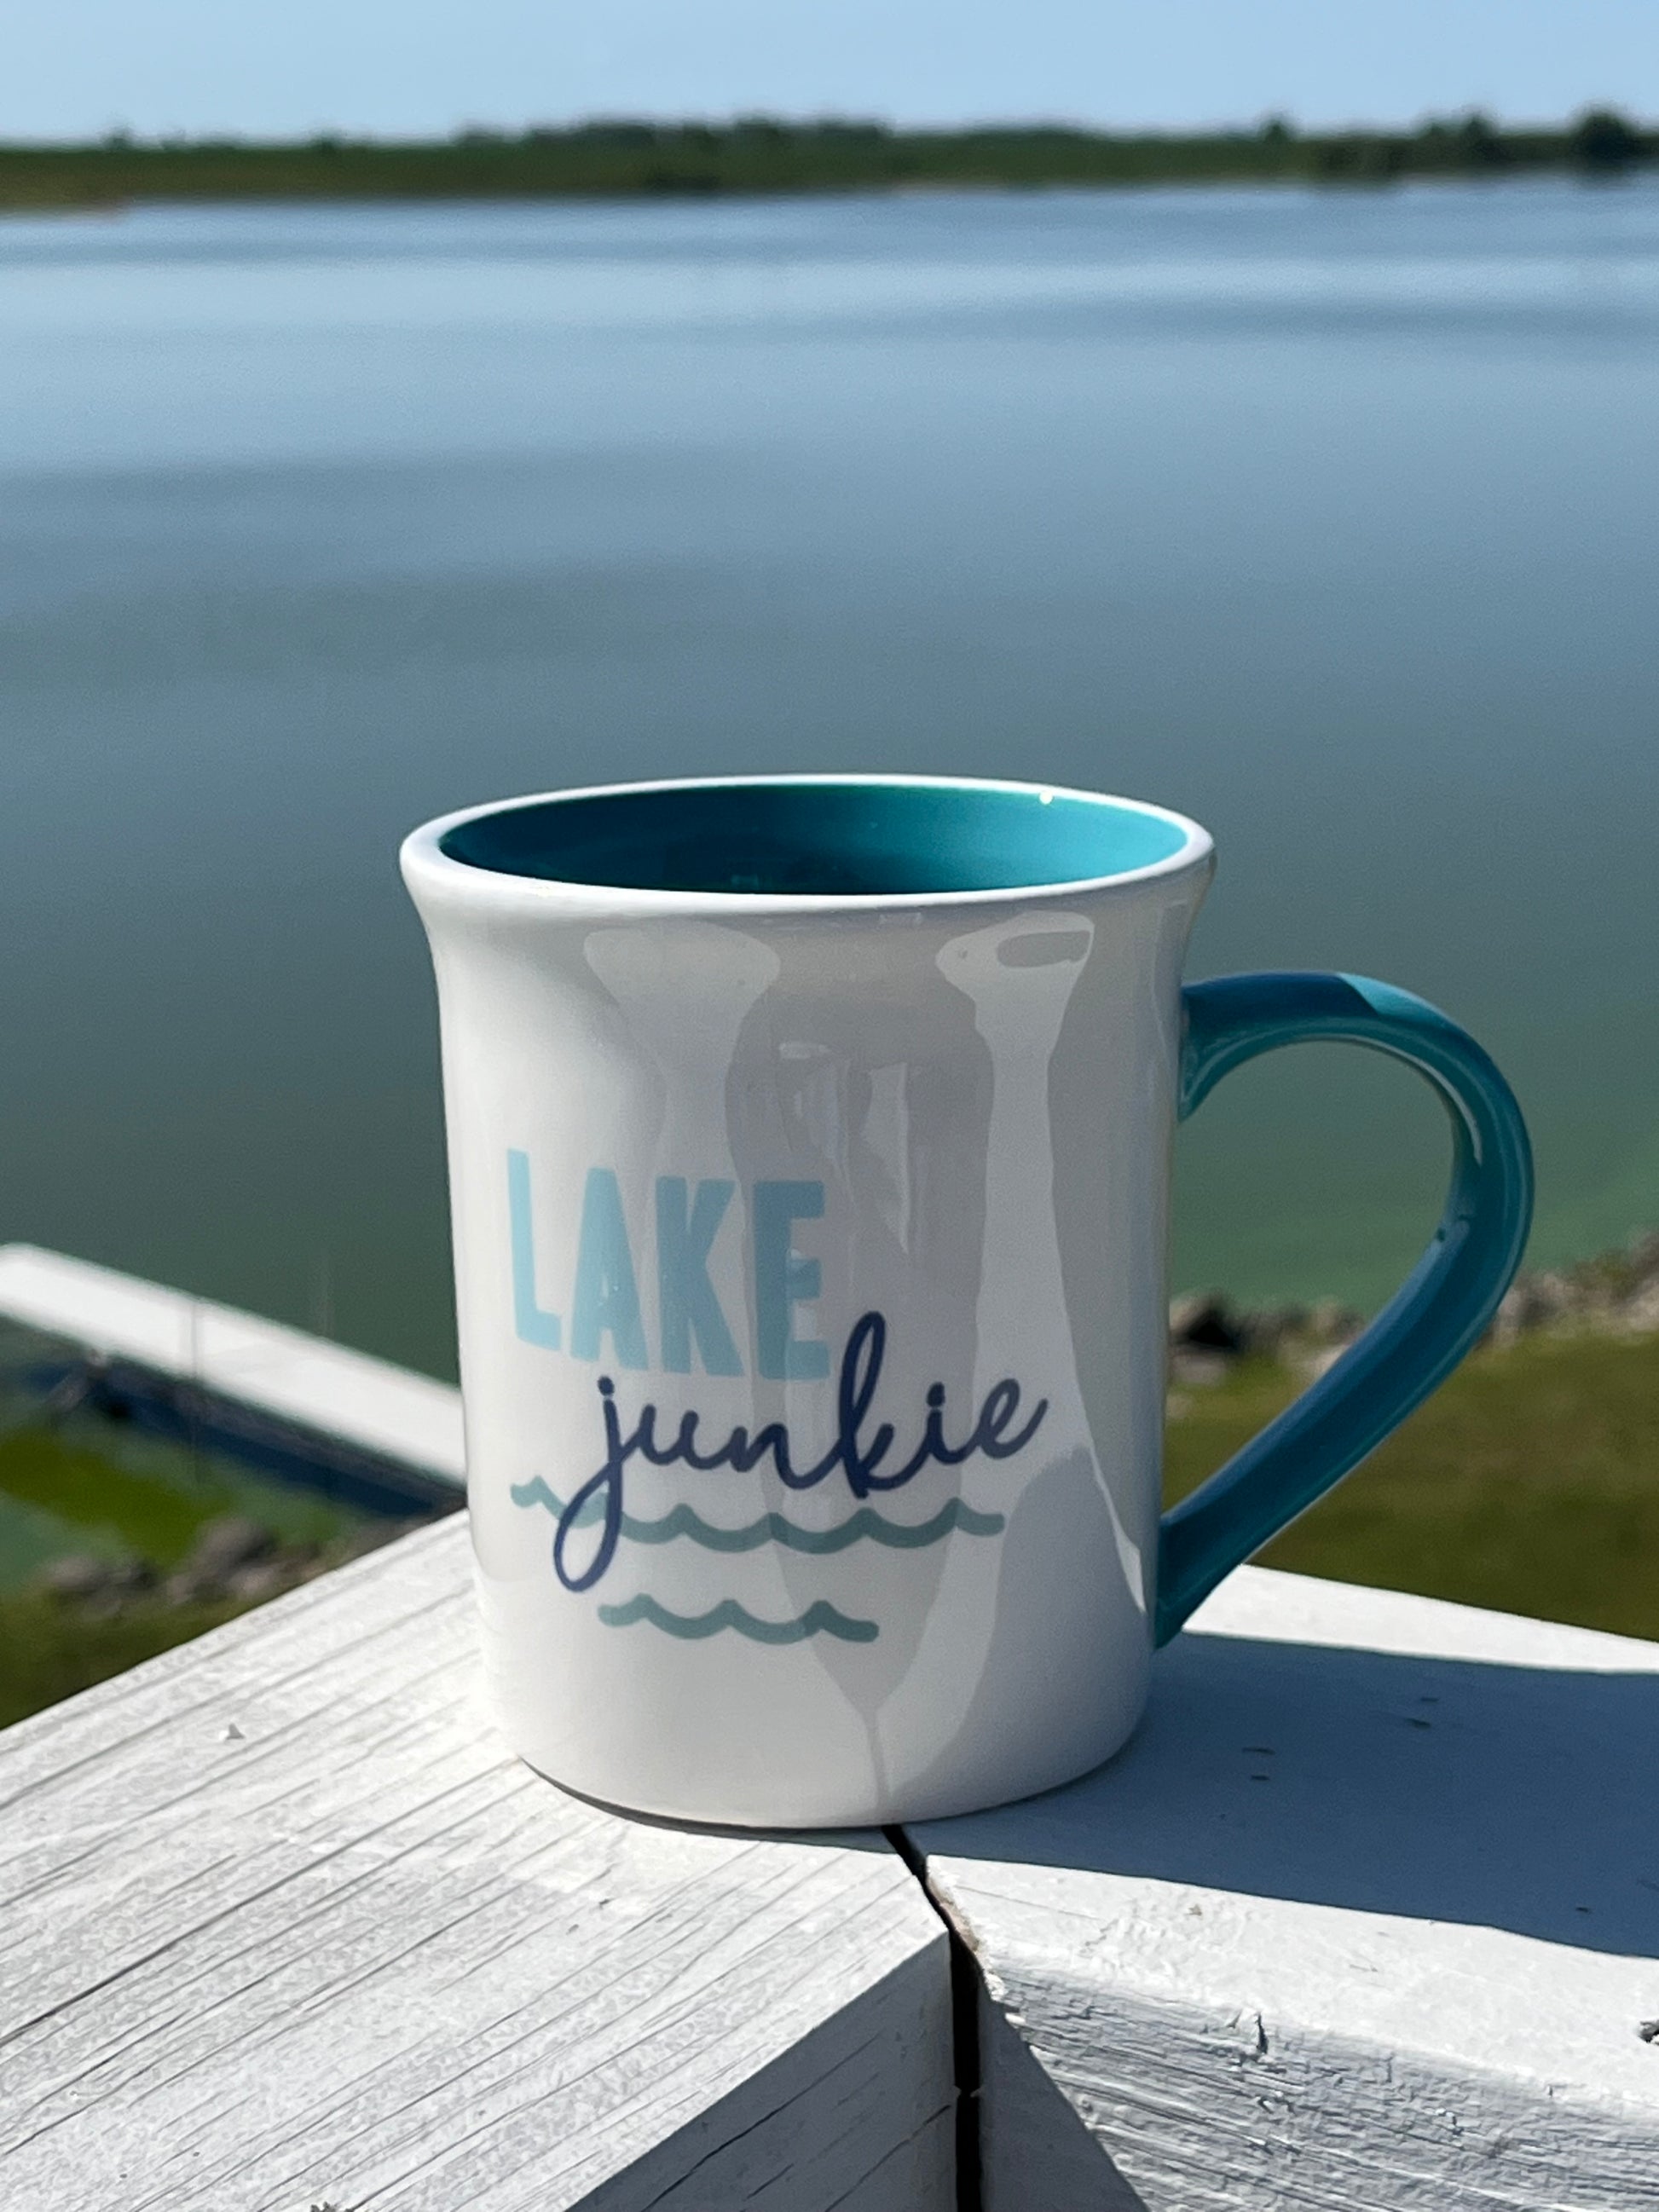 Lake Oar Embossed Coffee Mug